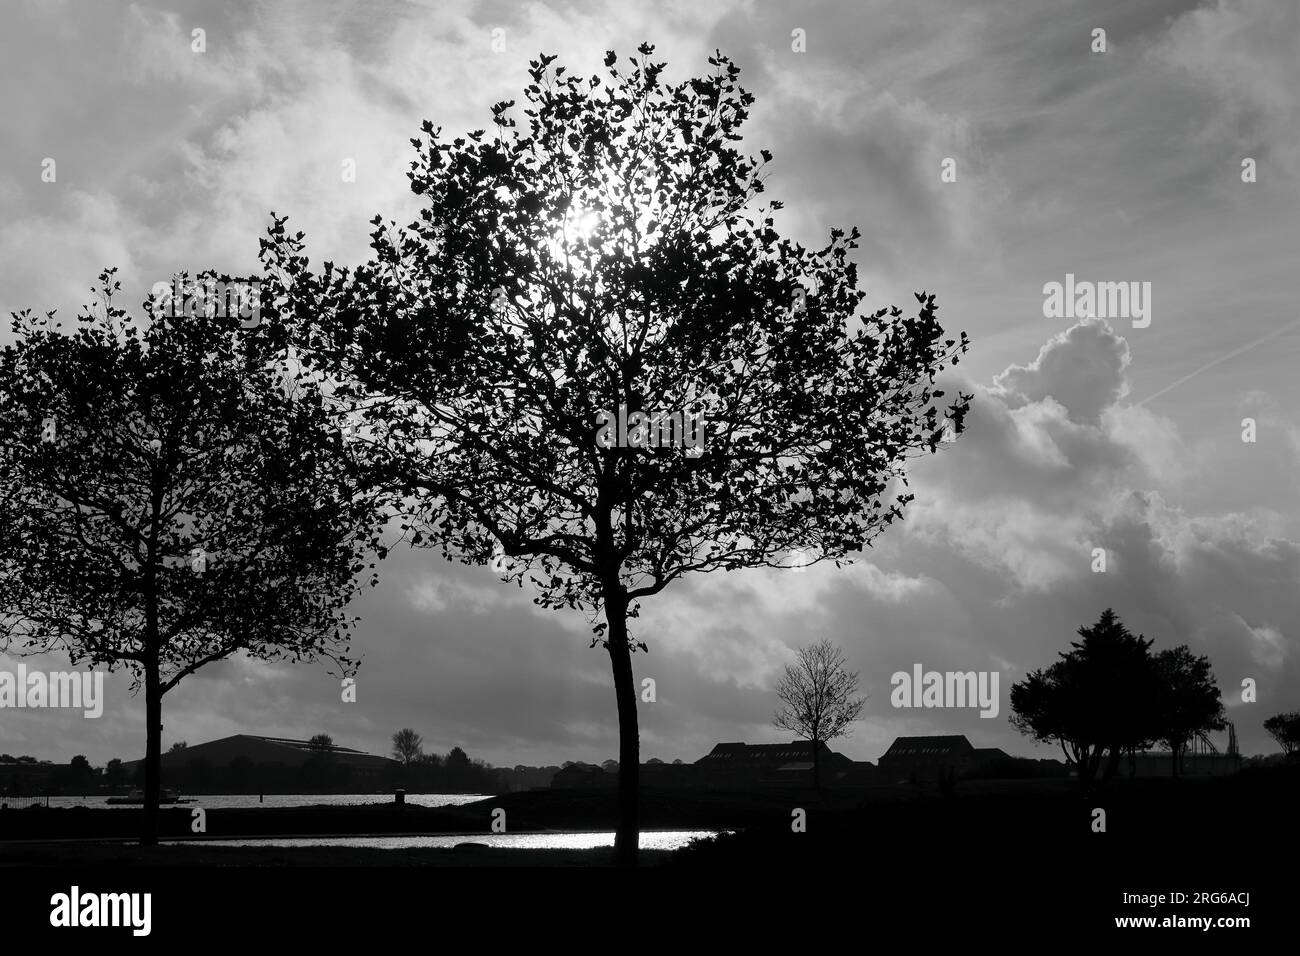 Schwarz-Weiß-Bild eines Baumes vor einem dunklen und bewölkten Himmel mit einem hellen Sonnenschein zwischen den Baumzweigen und hinter den Wolken. Stockfoto